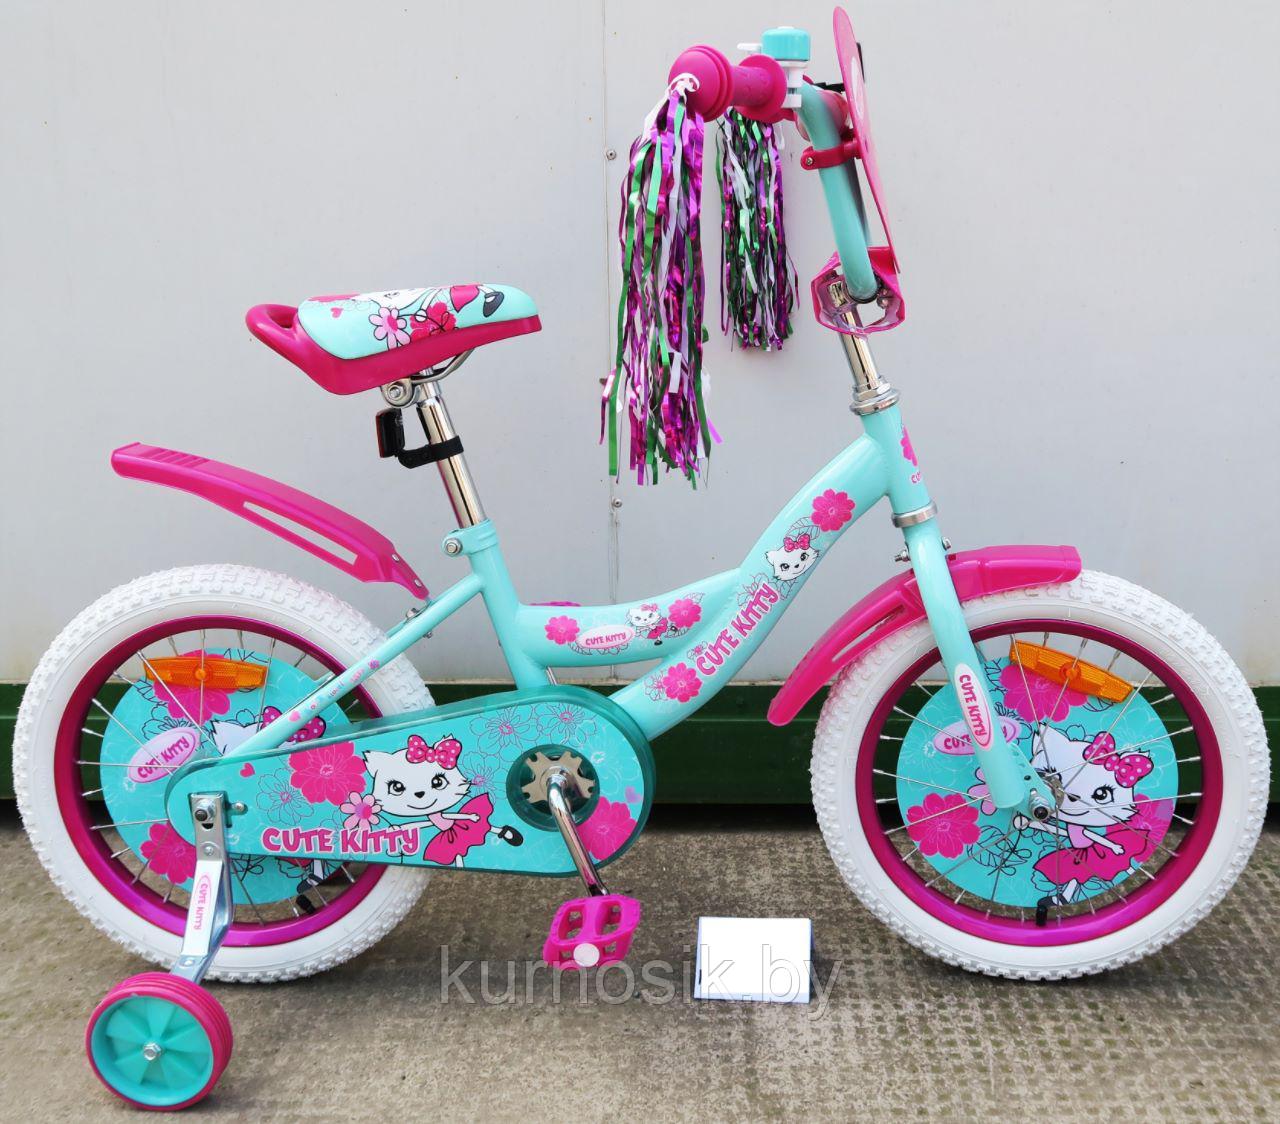 Детский Велосипед Kitty 20" розовый Бирюзовый